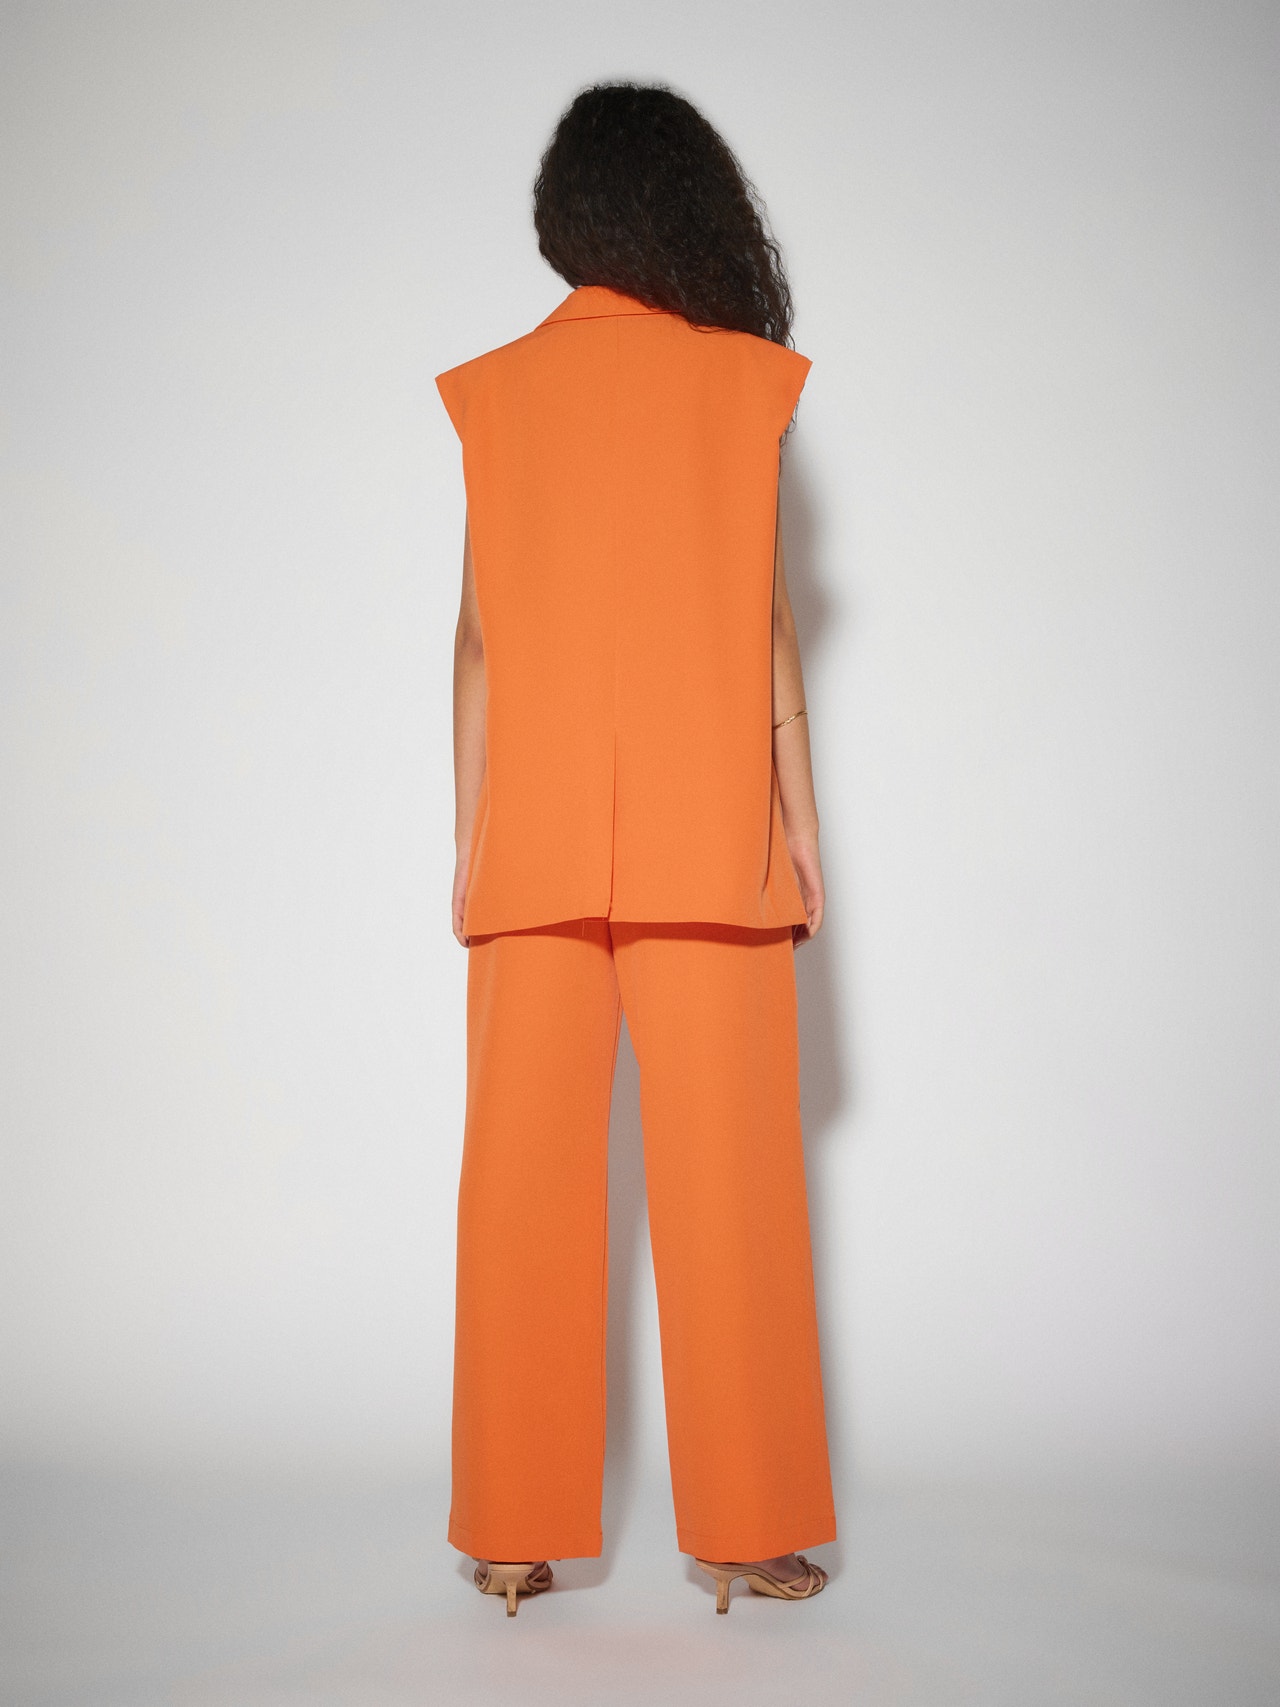 Vero Moda SOMETHINGNEW X KLARA HELLQVIST Spodnie -Exotic Orange - 10288151